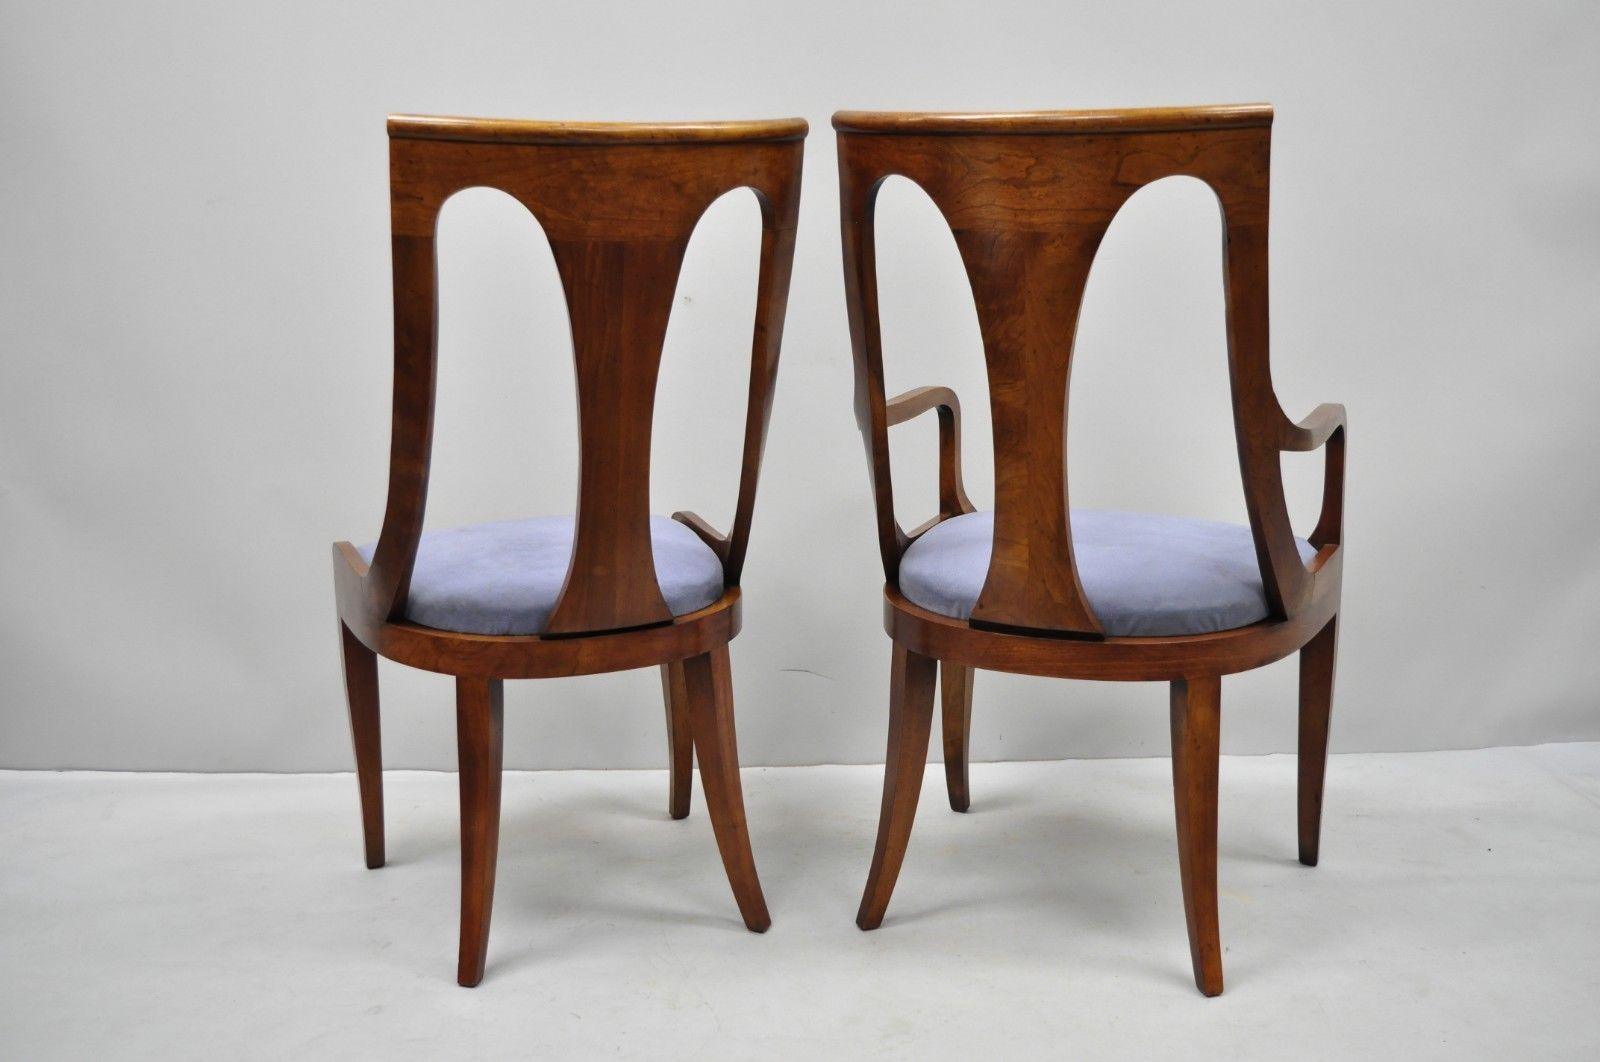 Sechs Nussbaumstühle im Regency-Stil mit geschwungener Rückenlehne und Säbelbeinen im Esszimmer (Walnuss)